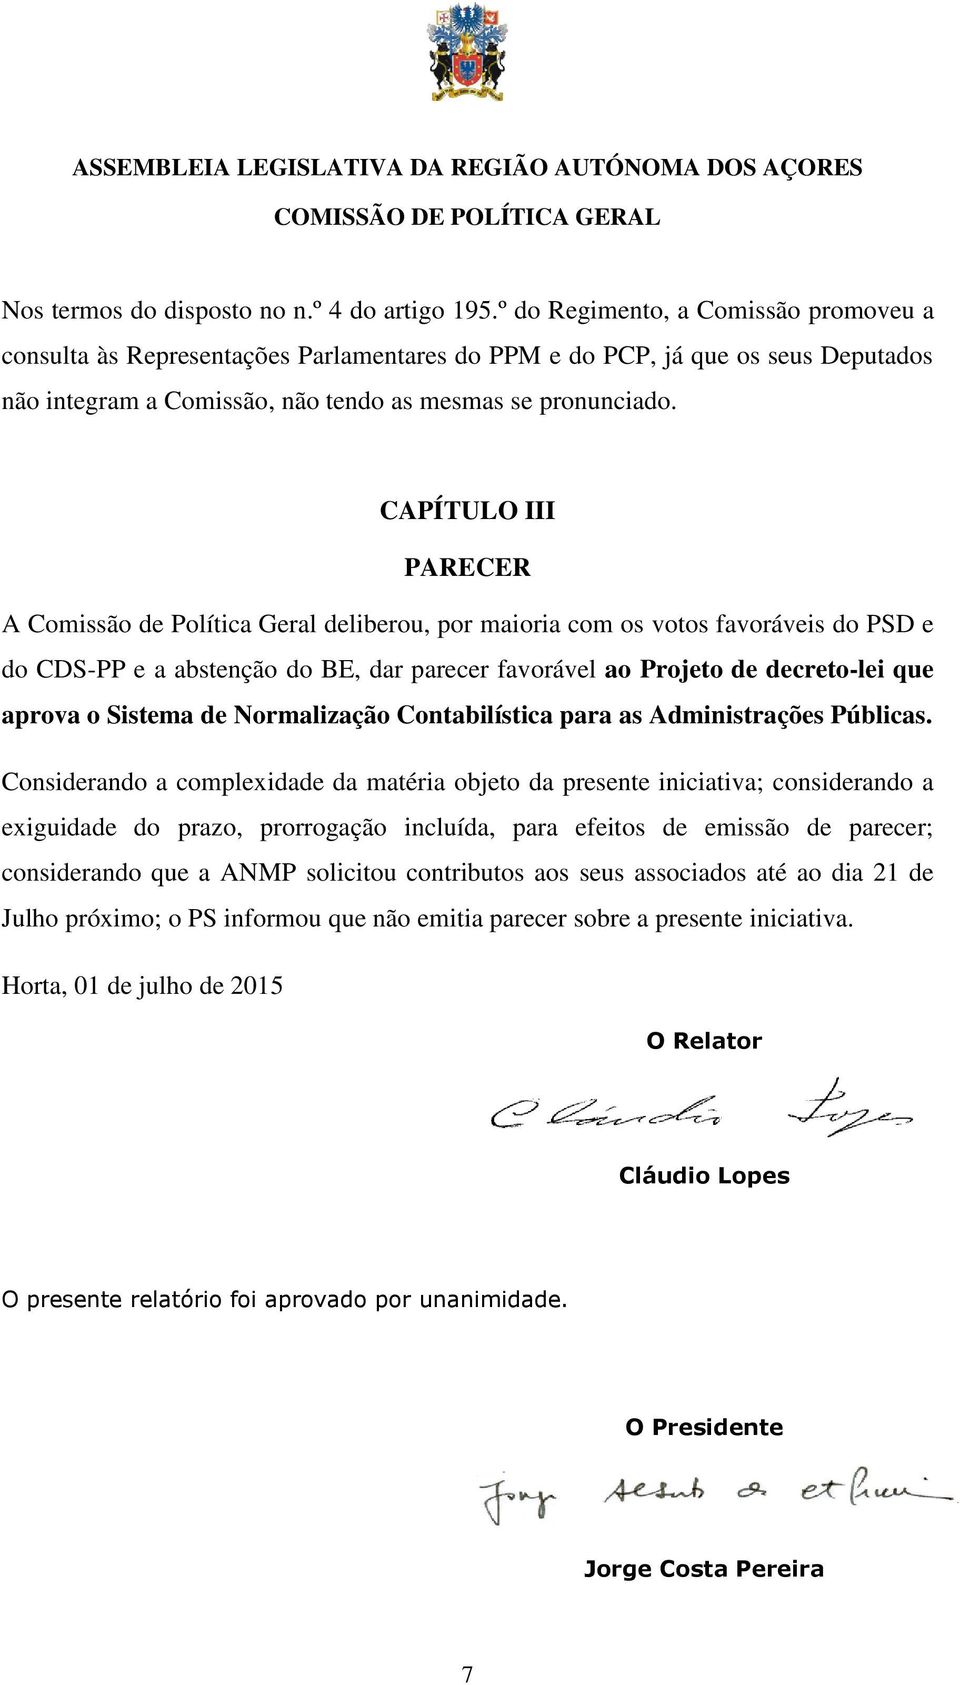 CAPÍTULO III PARECER A Comissão de Política Geral deliberou, por maioria com os votos favoráveis do PSD e do CDS-PP e a abstenção do BE, dar parecer favorável ao Projeto de decreto-lei que aprova o